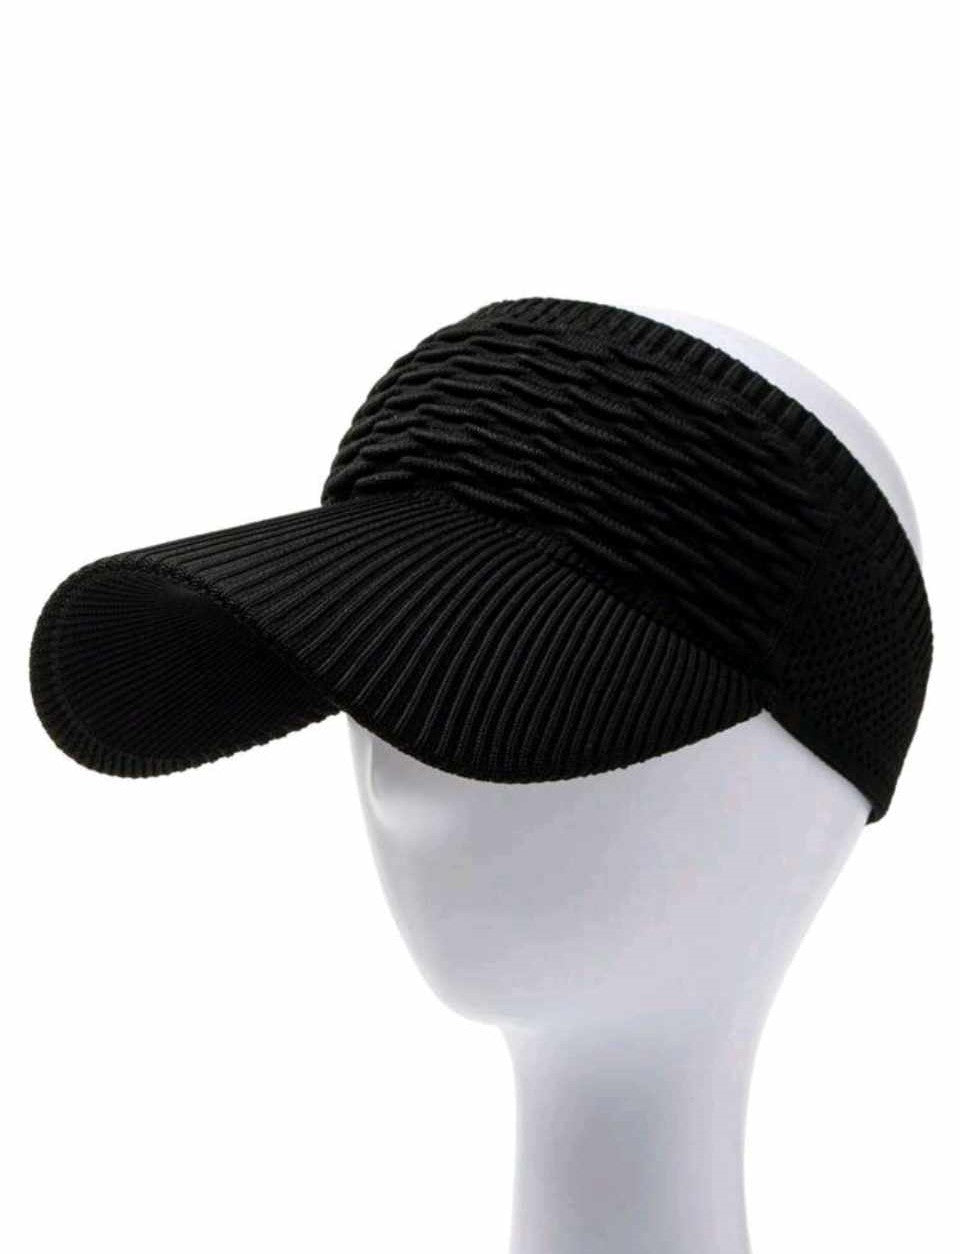 WOMEN'S DUCKBILL VISOR CAP (black)